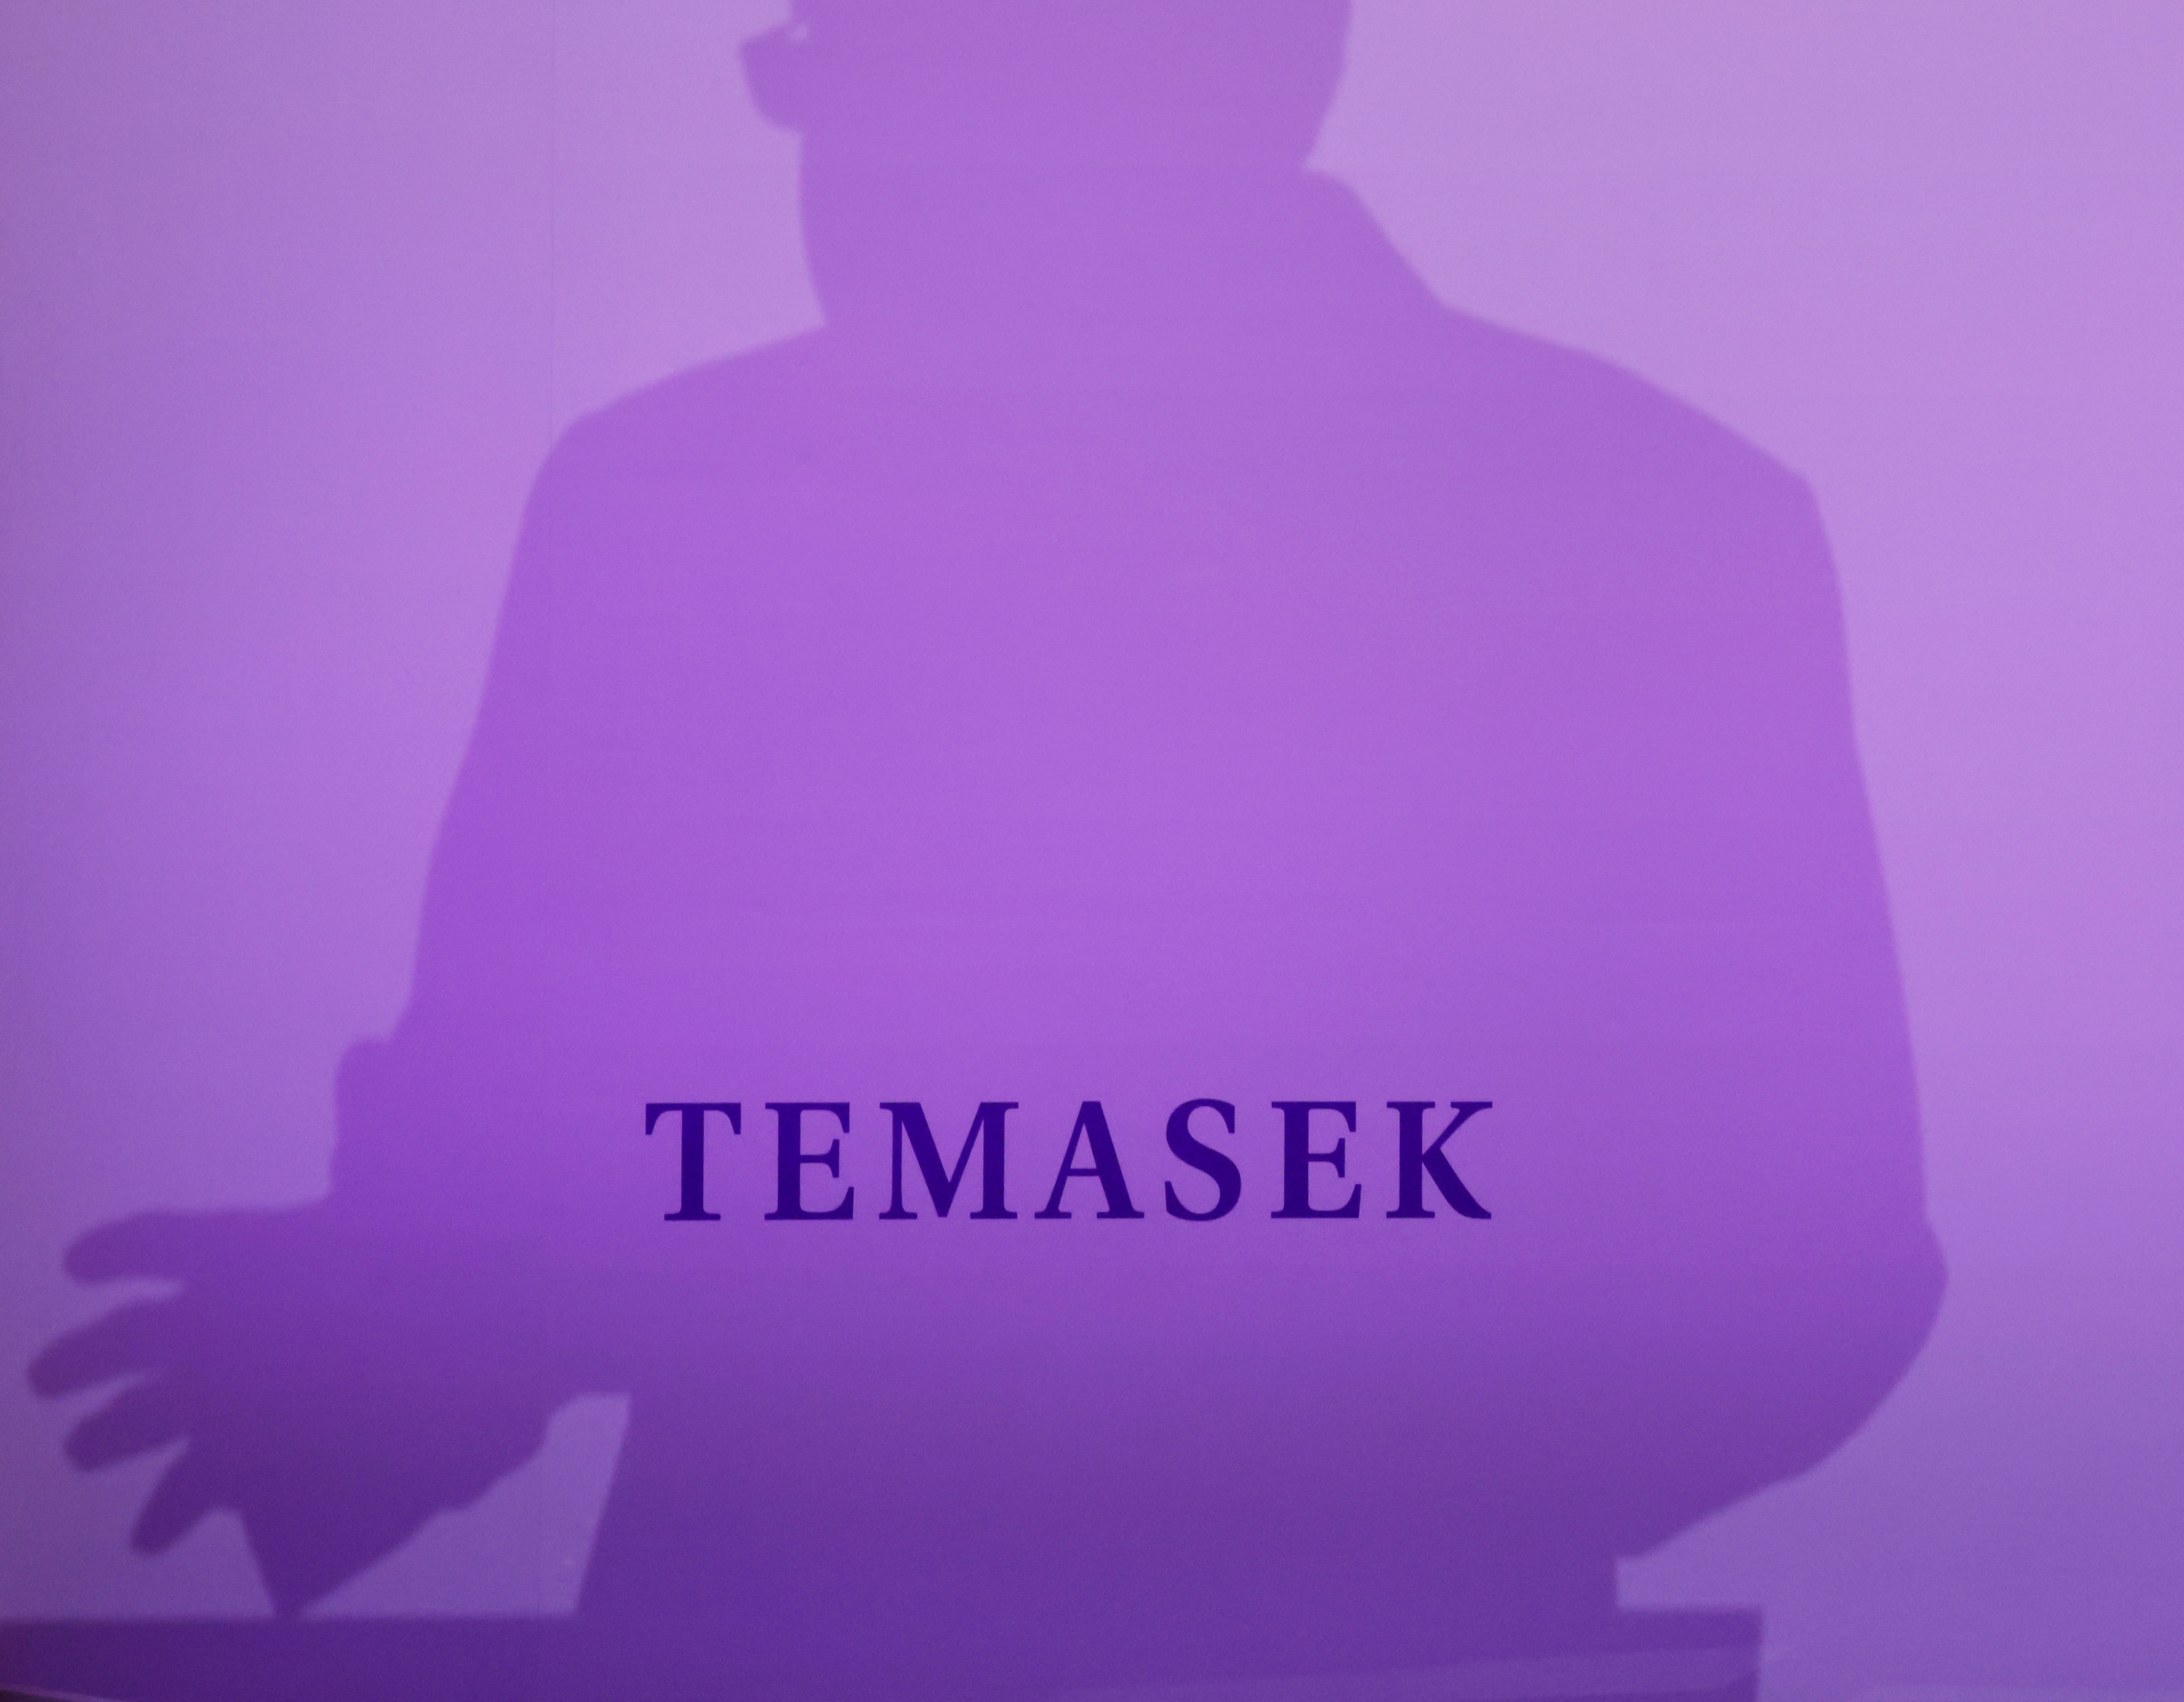 Temasek Review in Singapore